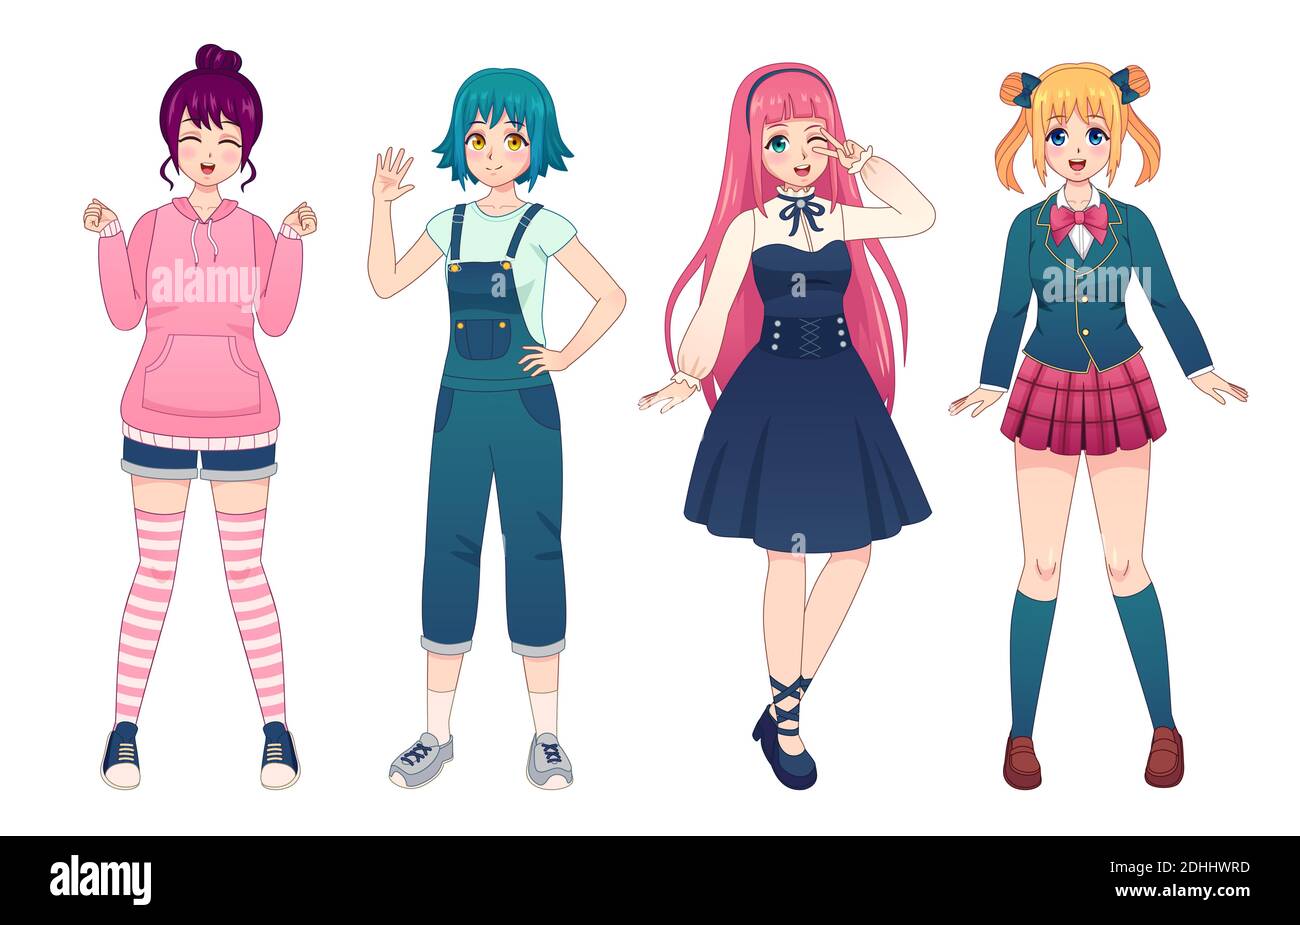 Anime-Mädchen. Schöne japanische Manga Schulmädchen in Uniform, Lolita Stil Kleid, Overalls und Hoodie. Glücklich kawaii weibliche Posen Vektor-Set Stock Vektor